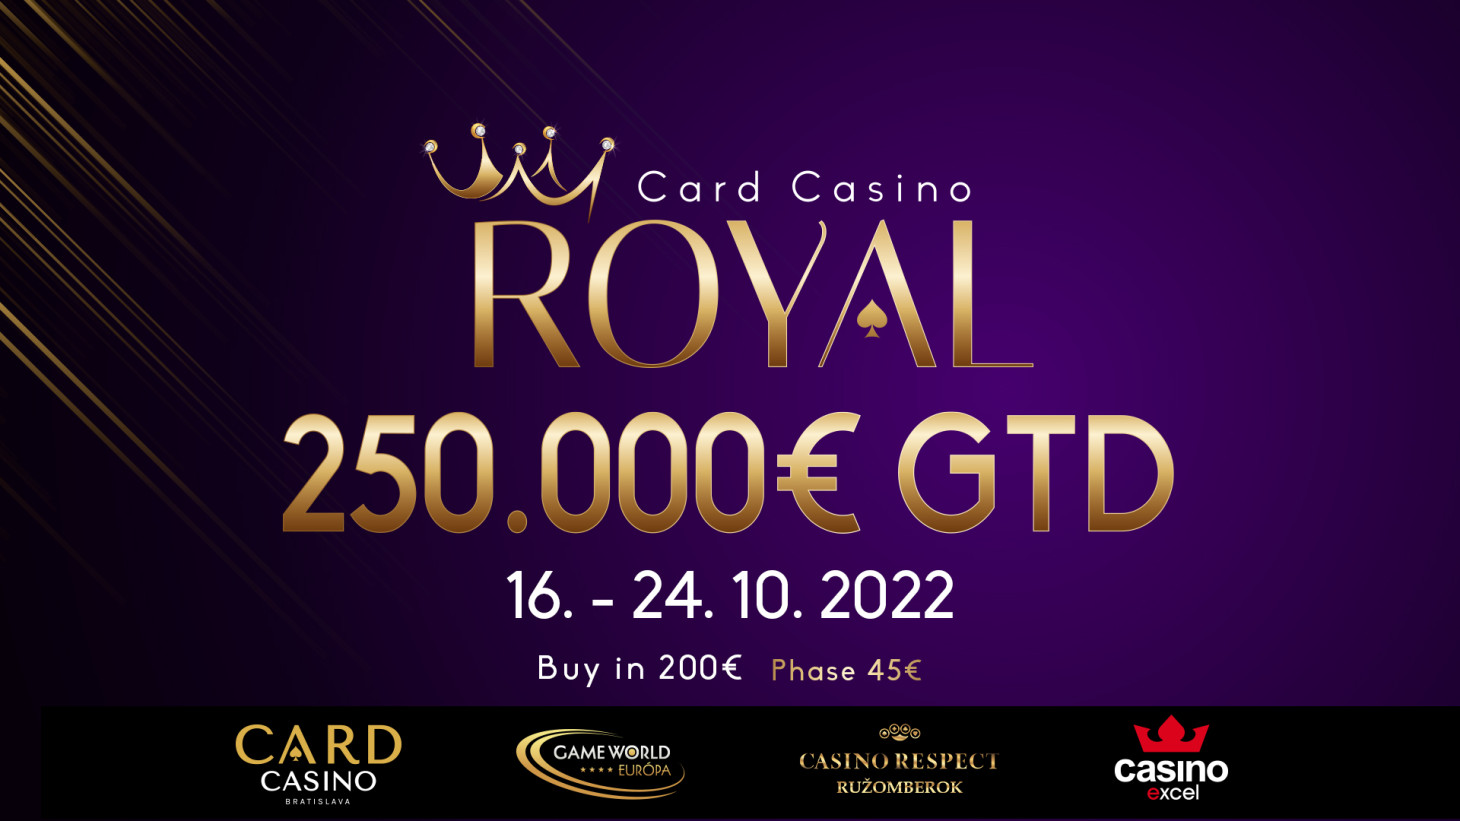 Unikátny Card Casino ROYAL 250.000€ GTD rozohrá flighty po celom Slovensku